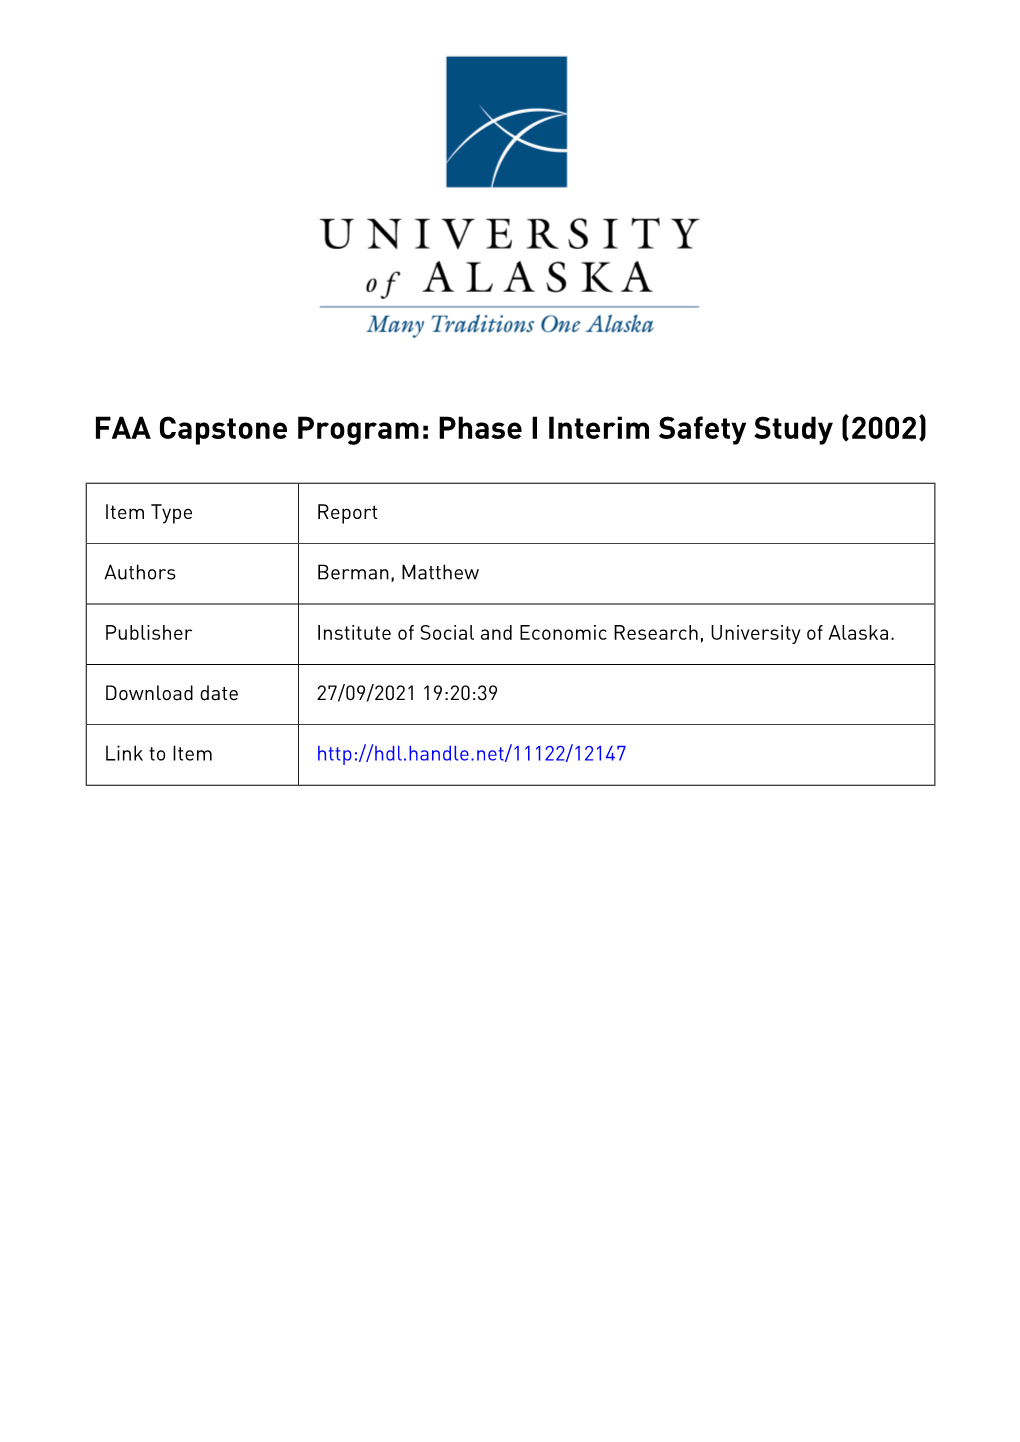 Capstone Phase I Interim Safety Study, 2002